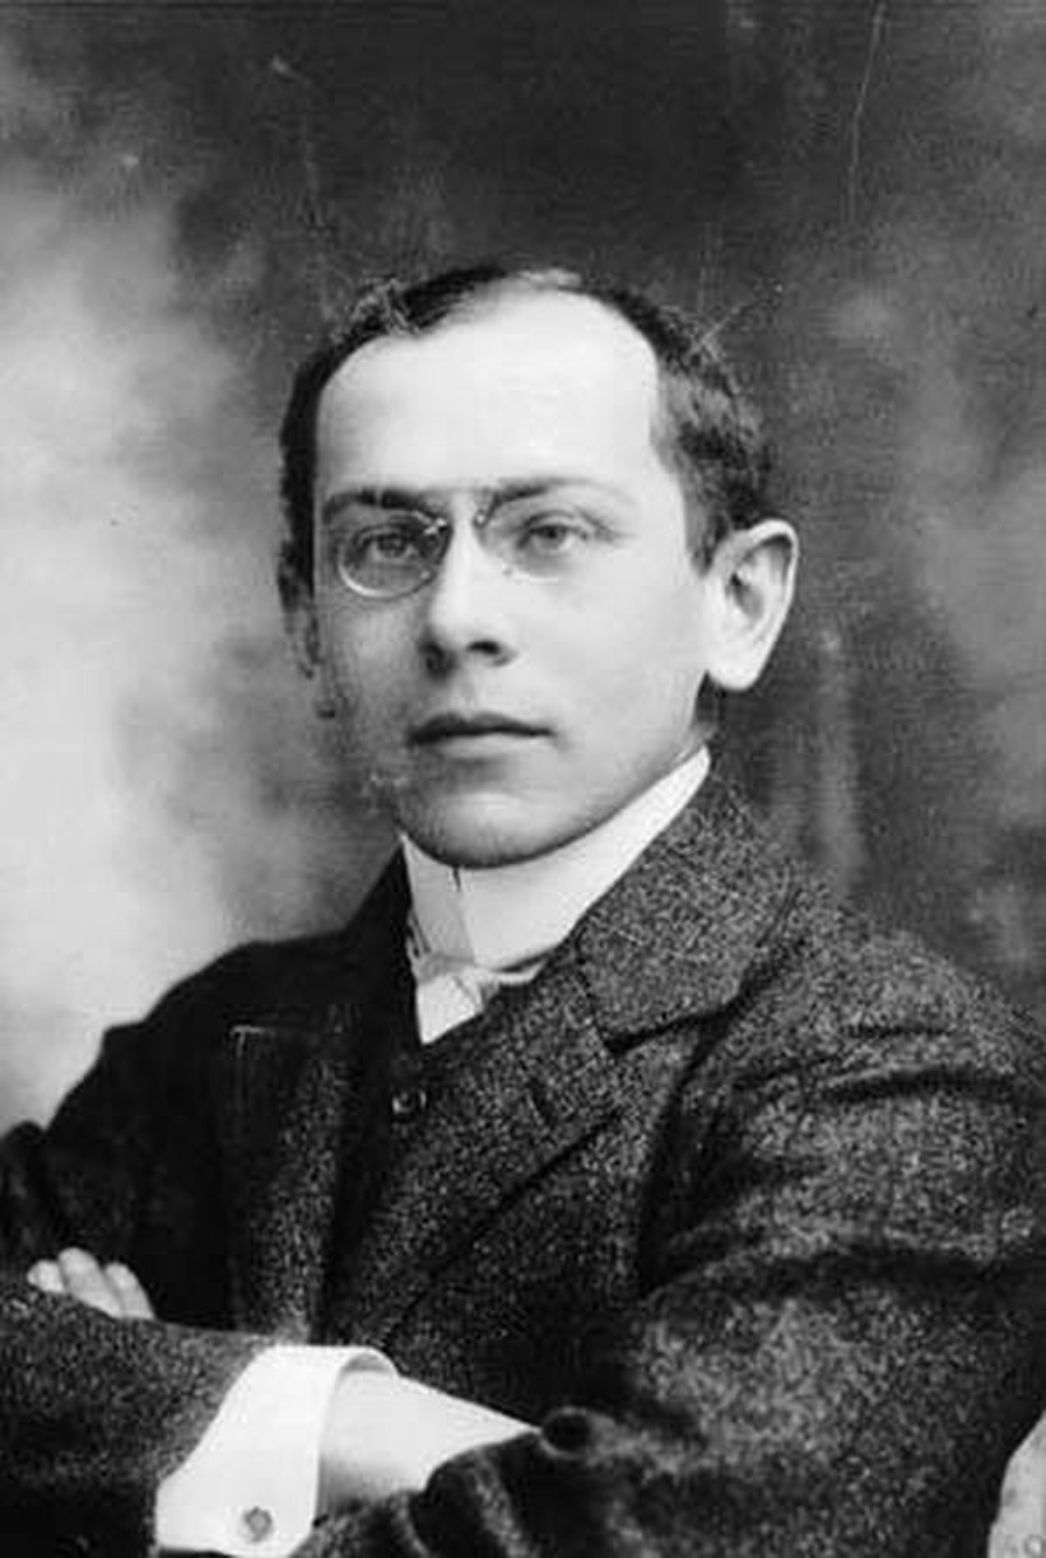 Portrait photograph of Heinrich Steinitz